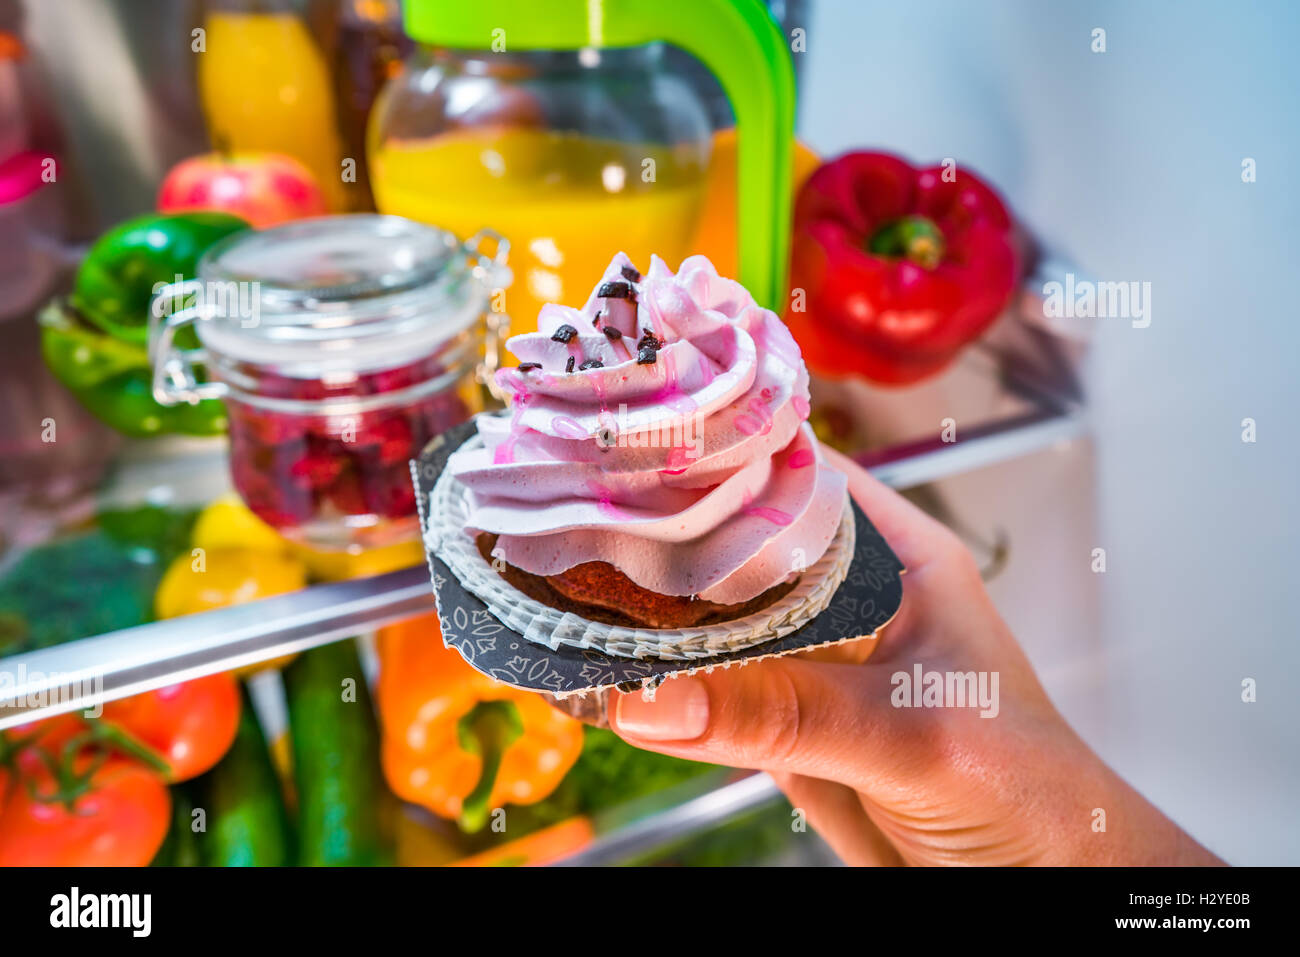 La donna prende la torta dolce dal frigorifero aperto Foto Stock